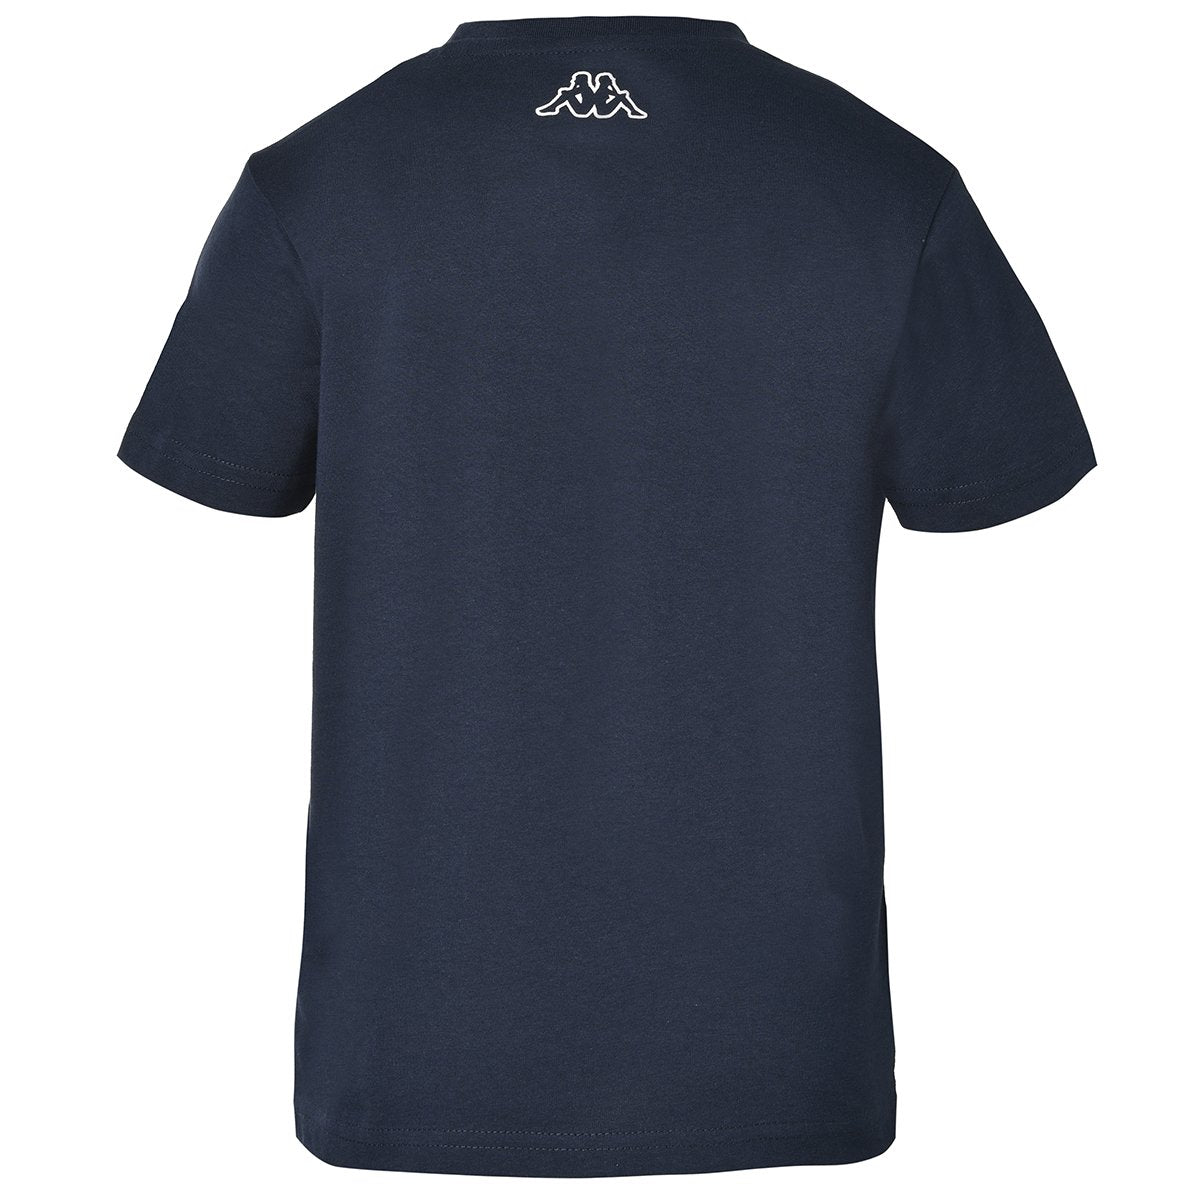 Camiseta Cartew azul garçon - Imagen 2